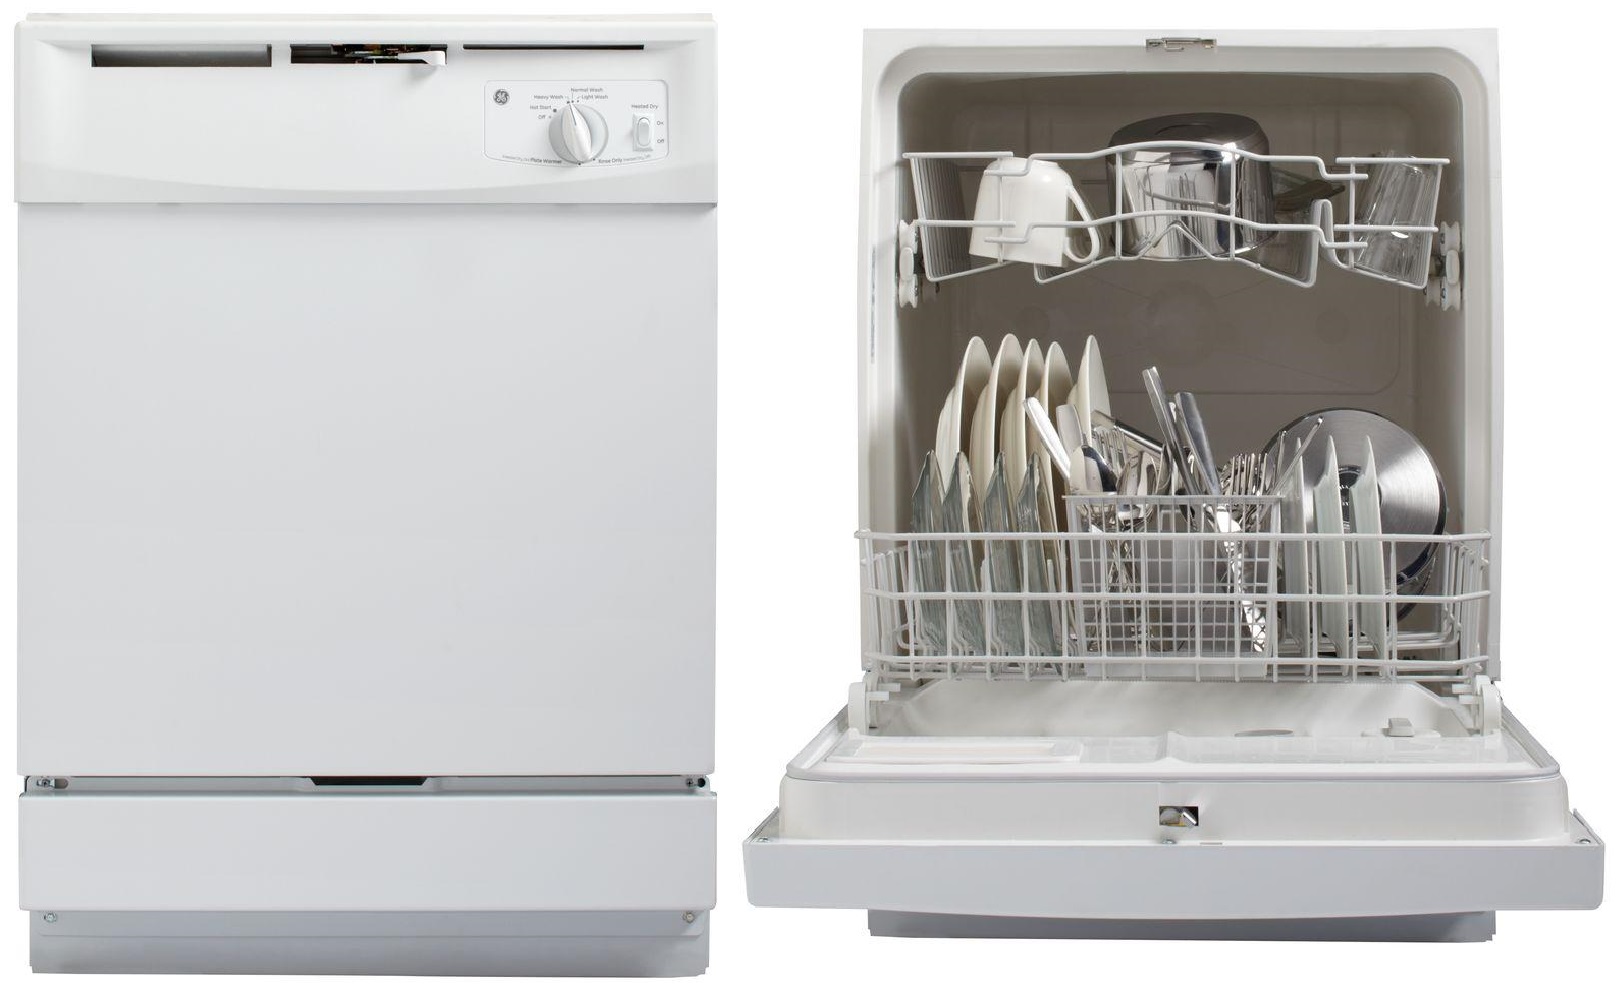 best cheap dishwasher